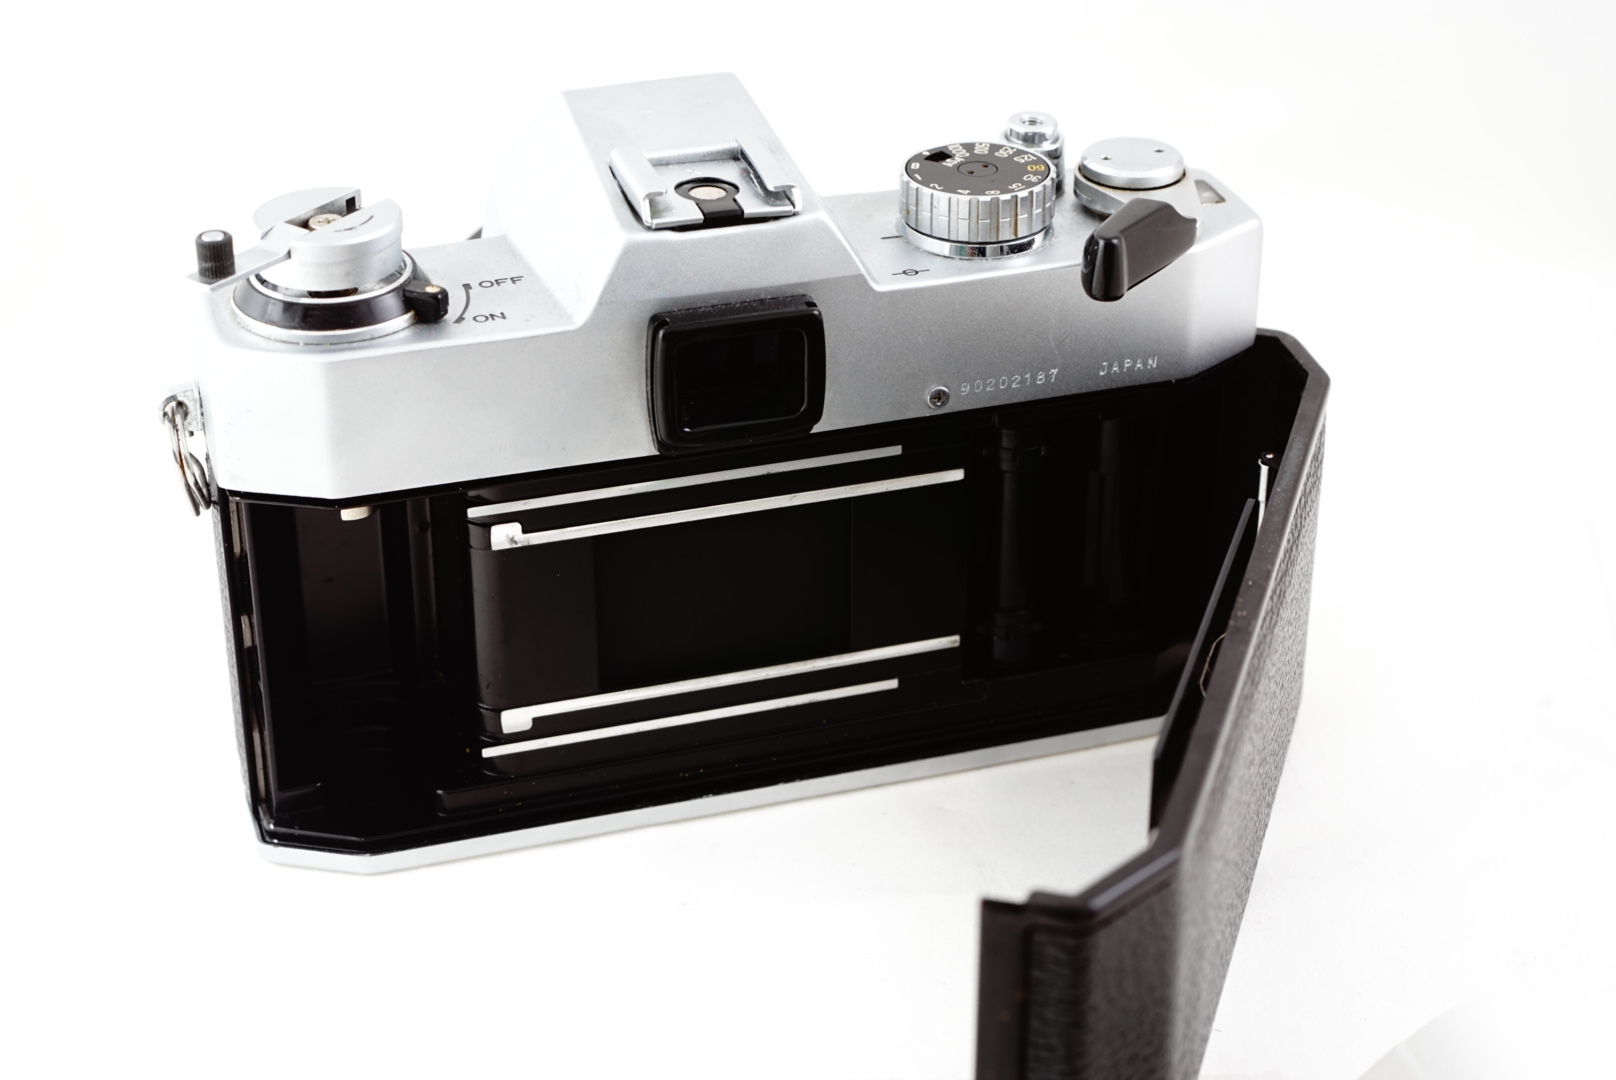 ภาพตัวอย่างกล้องฟิลม์ Yashica FX-2 ด้านหลังและทีใส่ฟิลม์